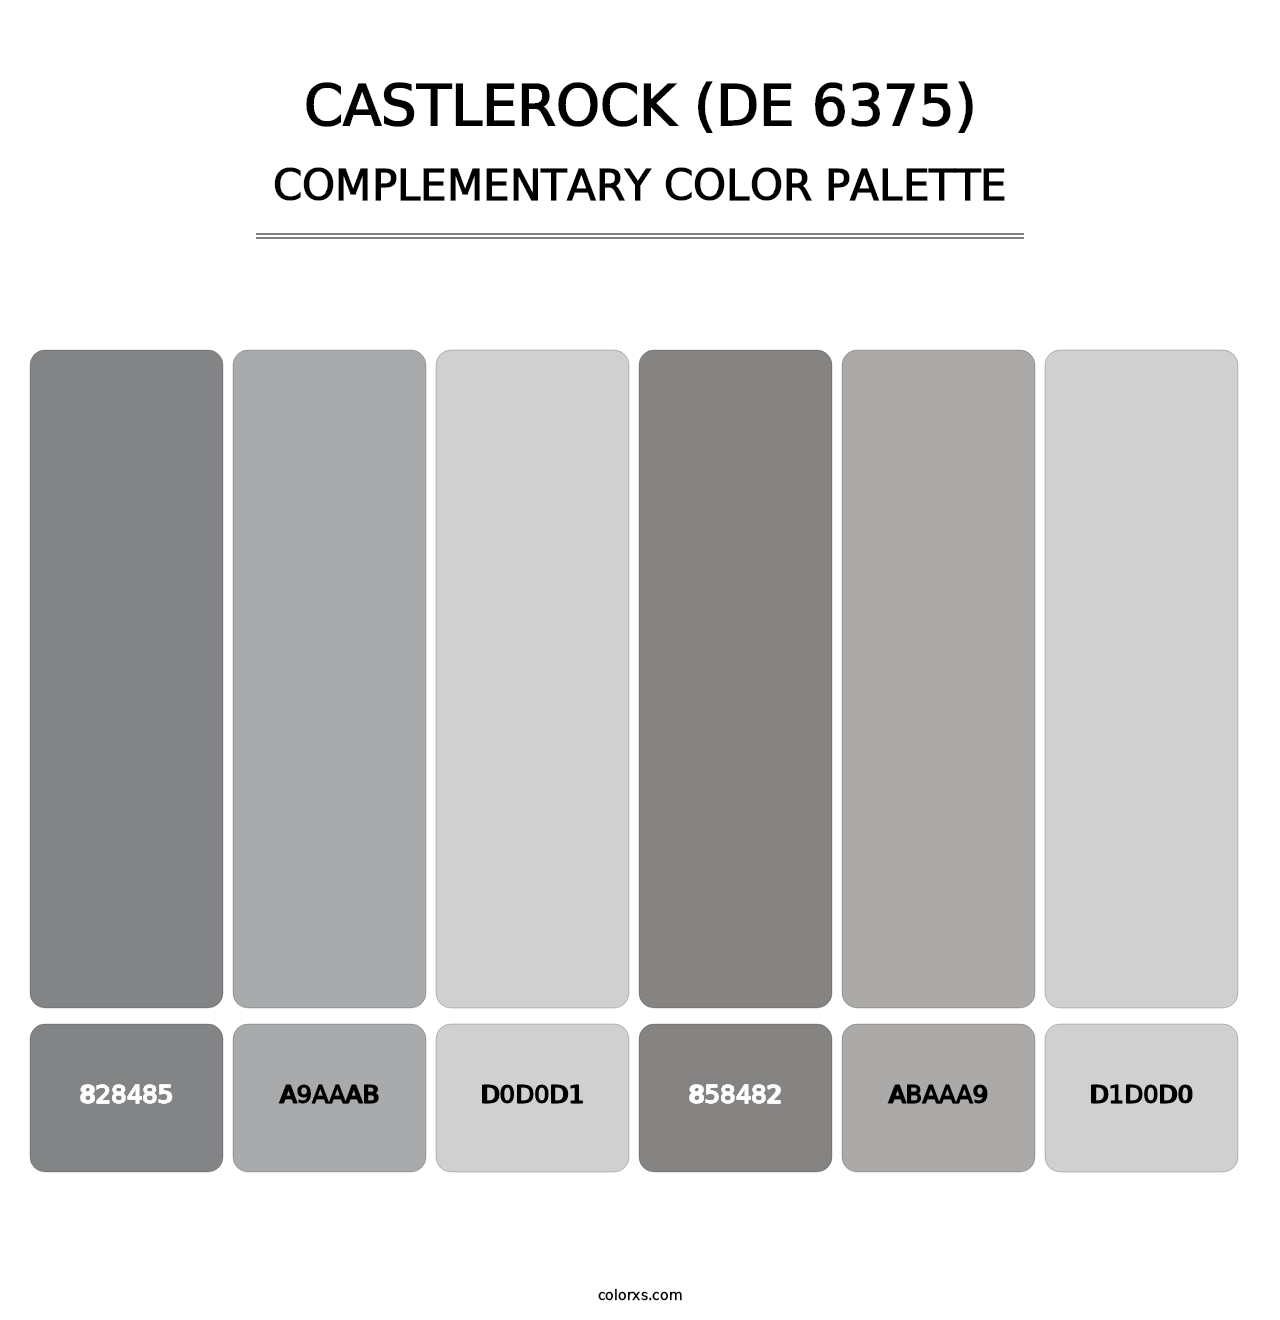 Castlerock (DE 6375) - Complementary Color Palette